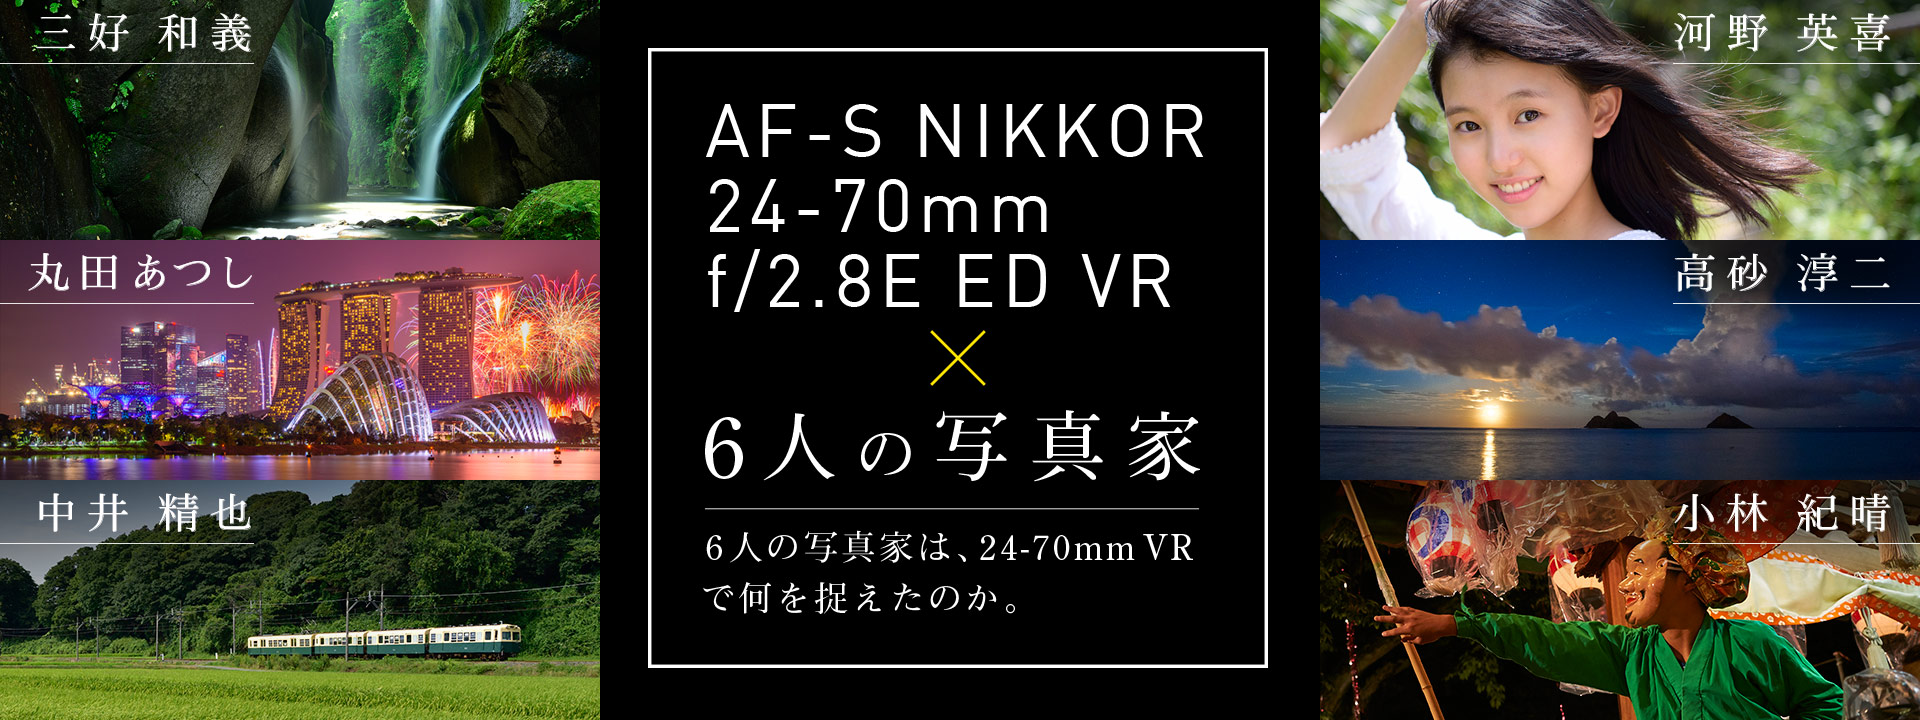 AF-S NOKKOR 24-70mm f/2.8E ED VR